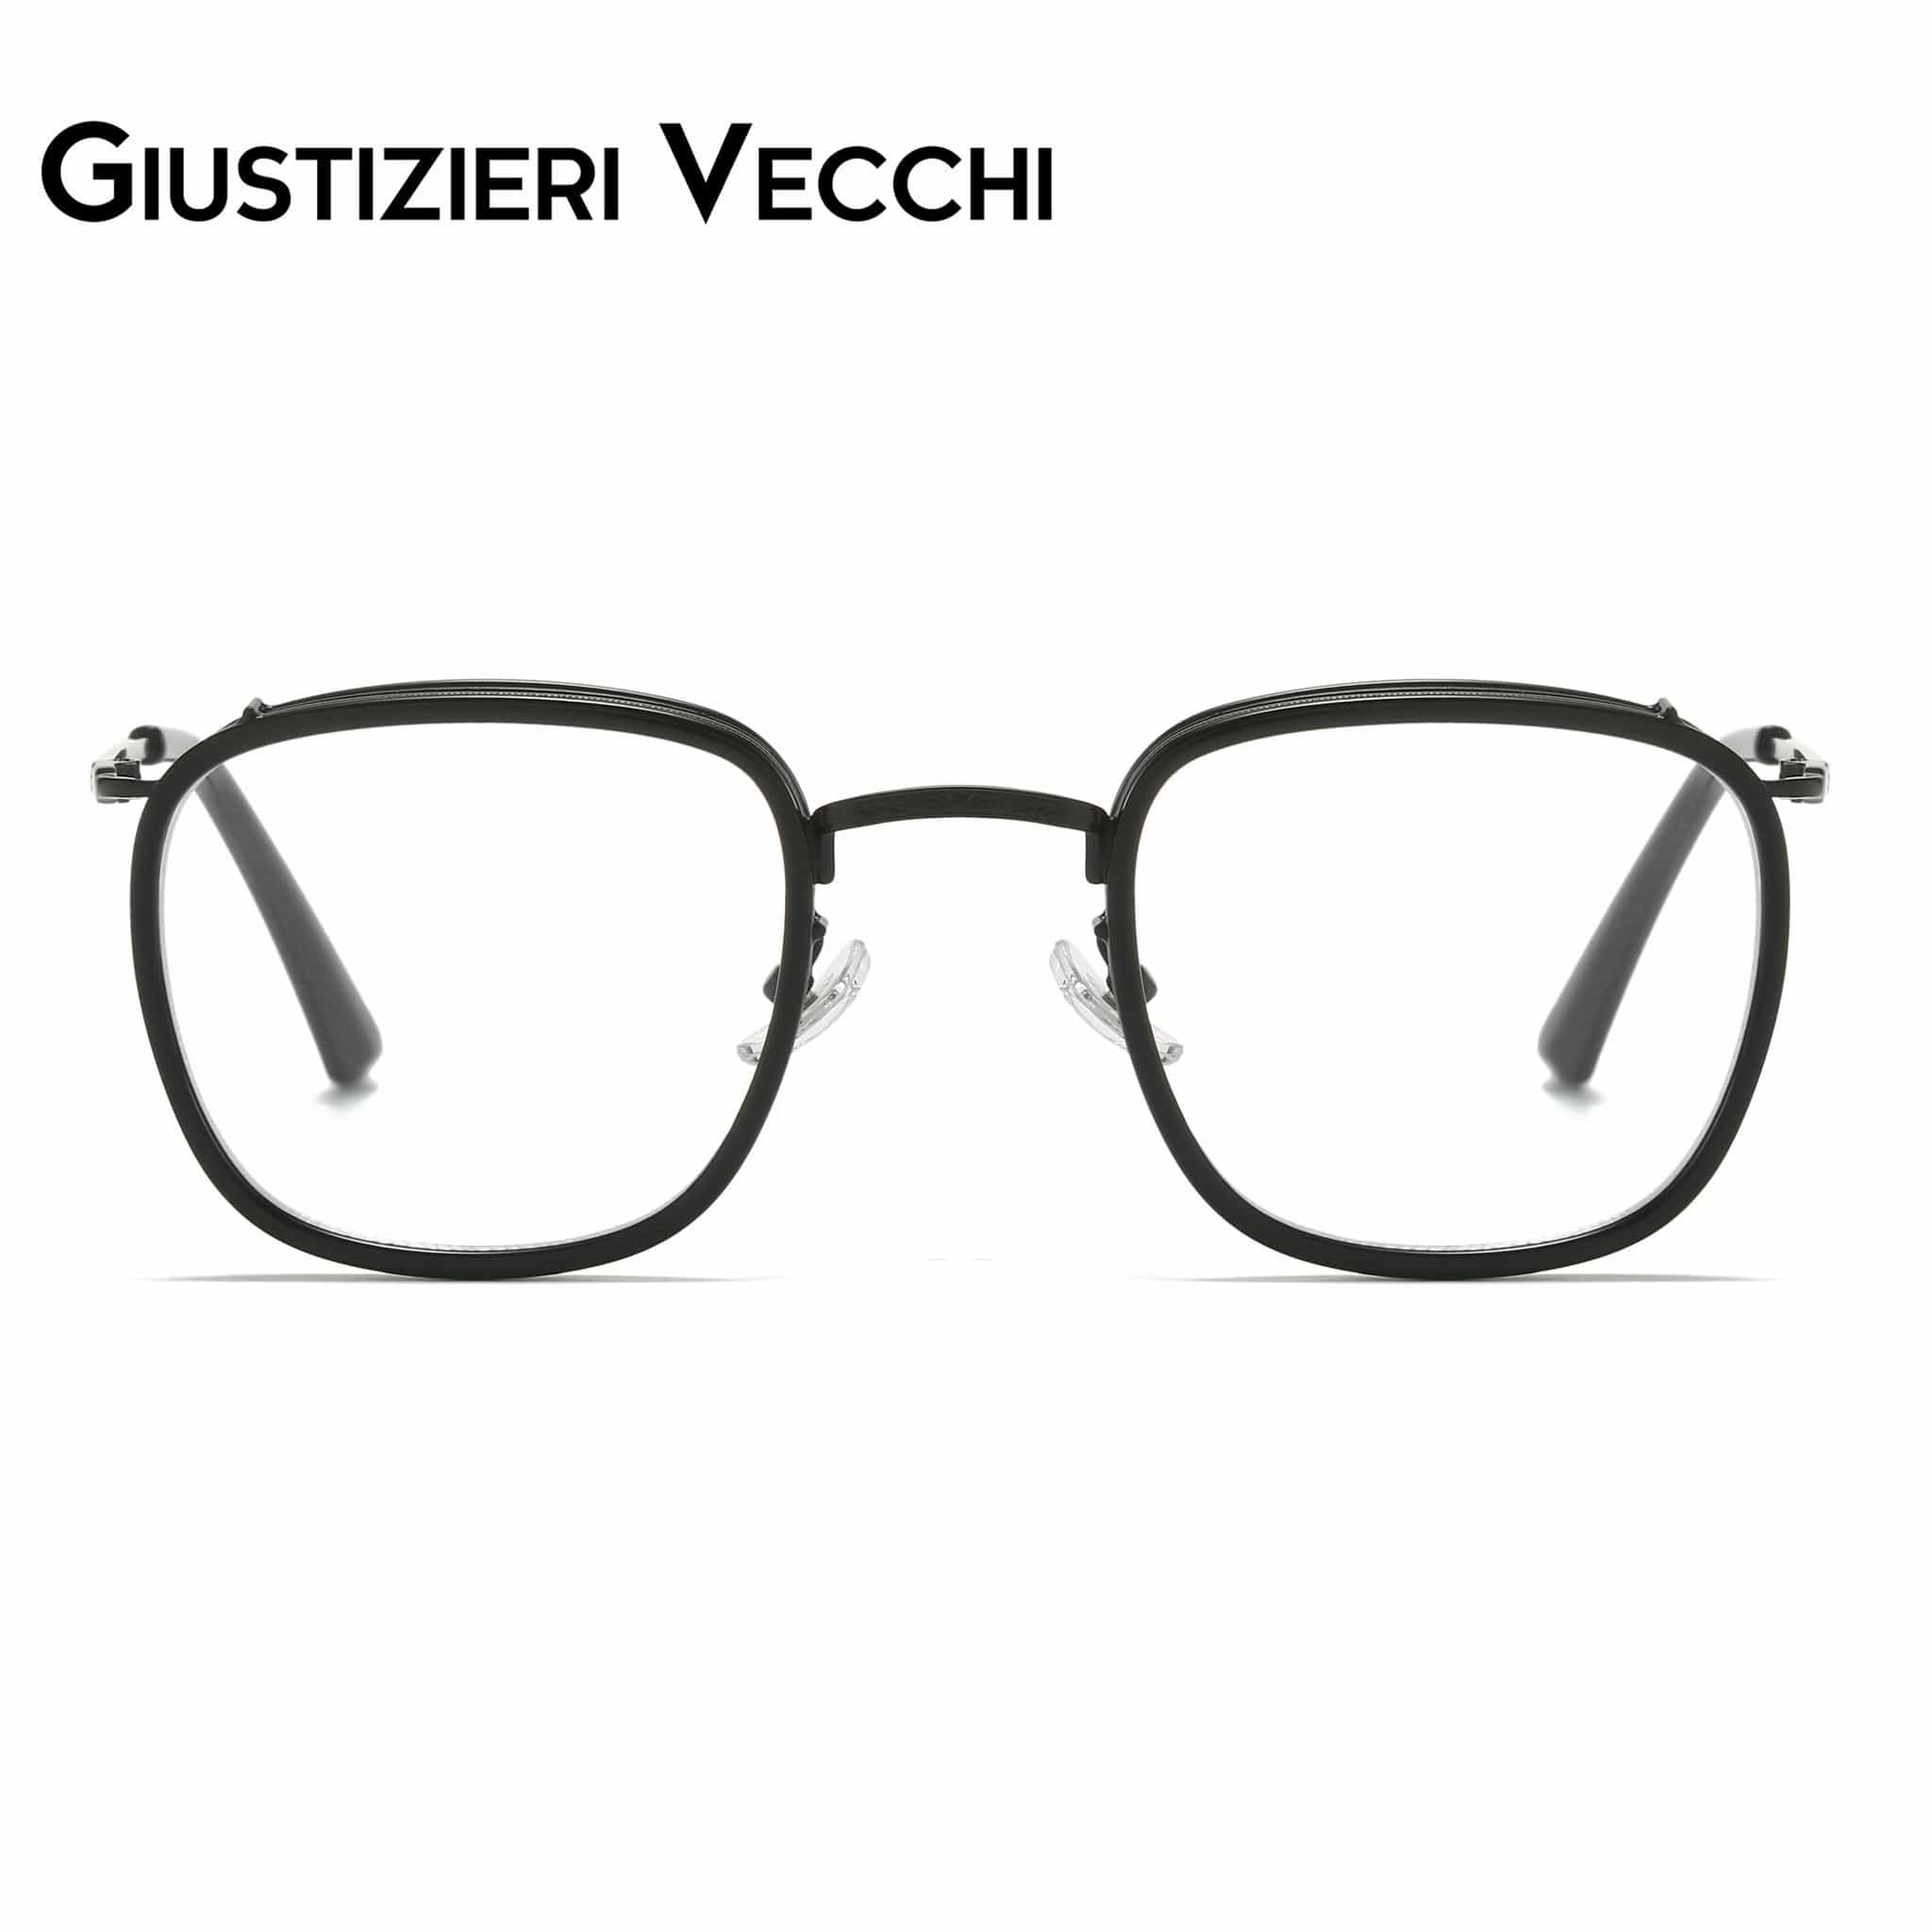 GIUSTIZIERI VECCHI Eyeglasses Black / Small Starry Night Uno